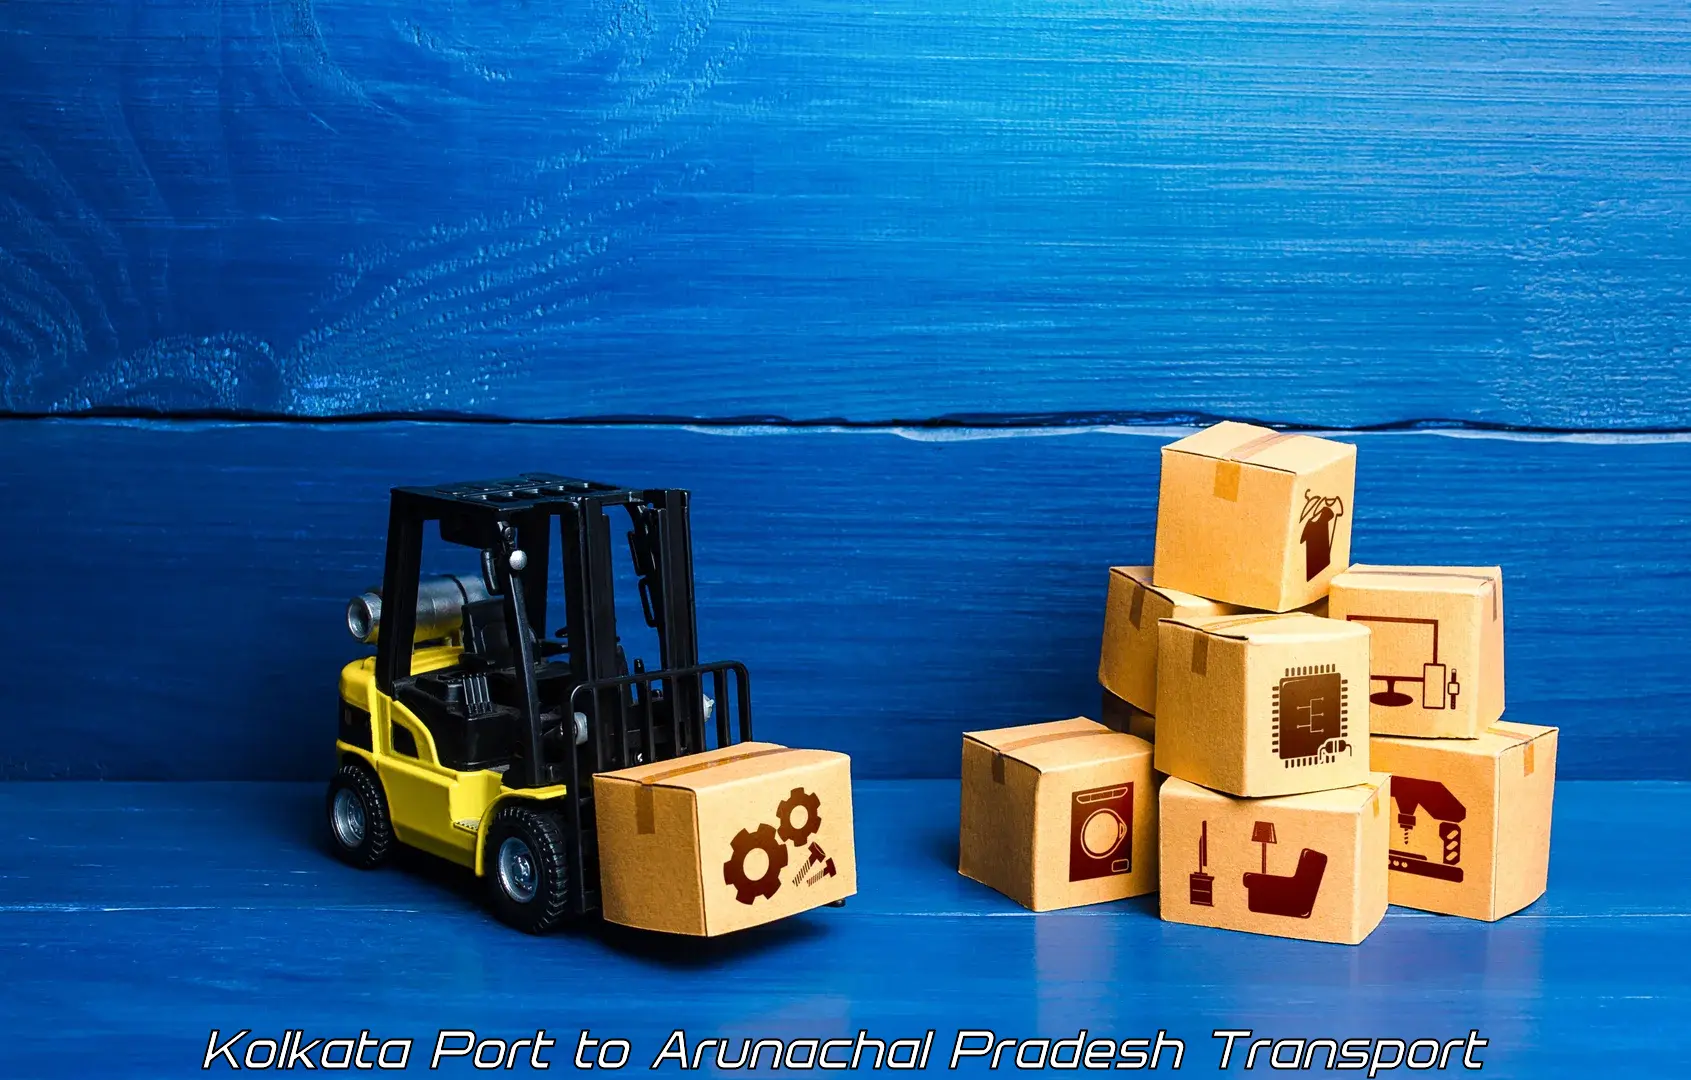 Truck transport companies in India in Kolkata Port to Bomdila